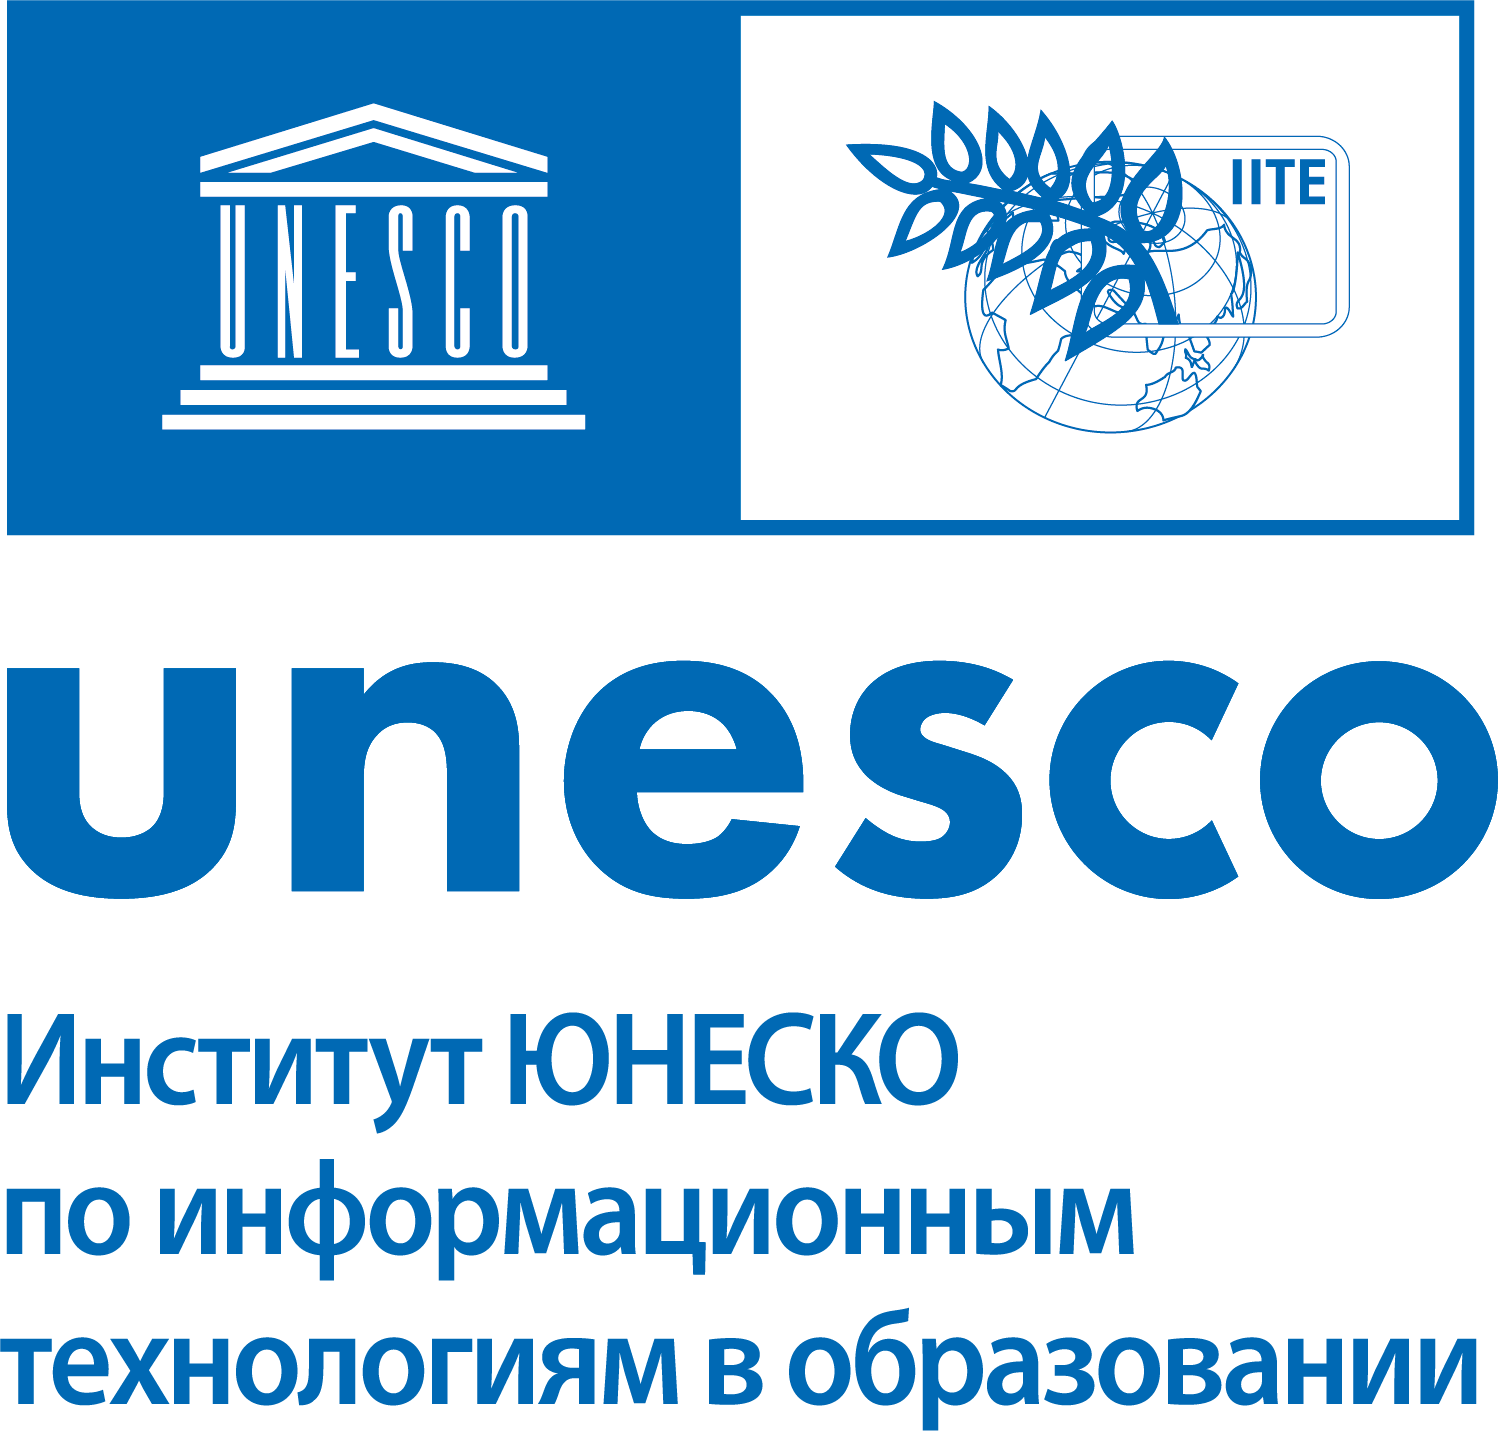 IITE UNESCO